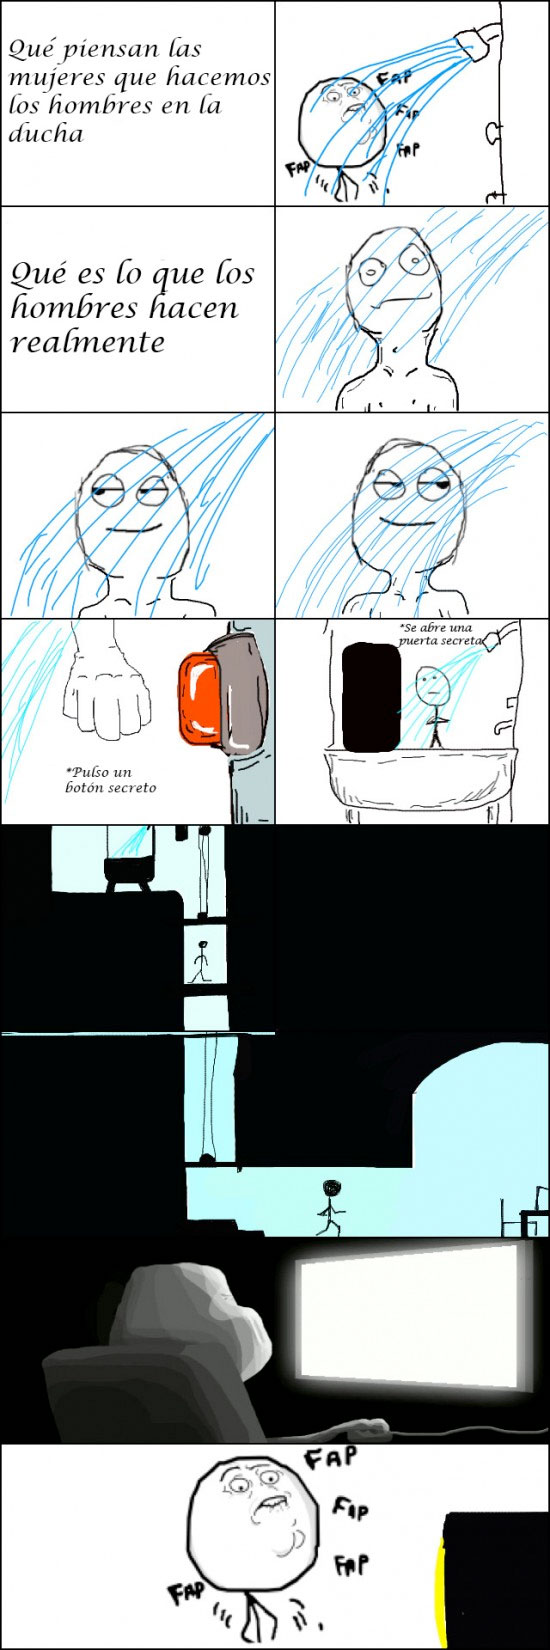 ducha,habitación secreta